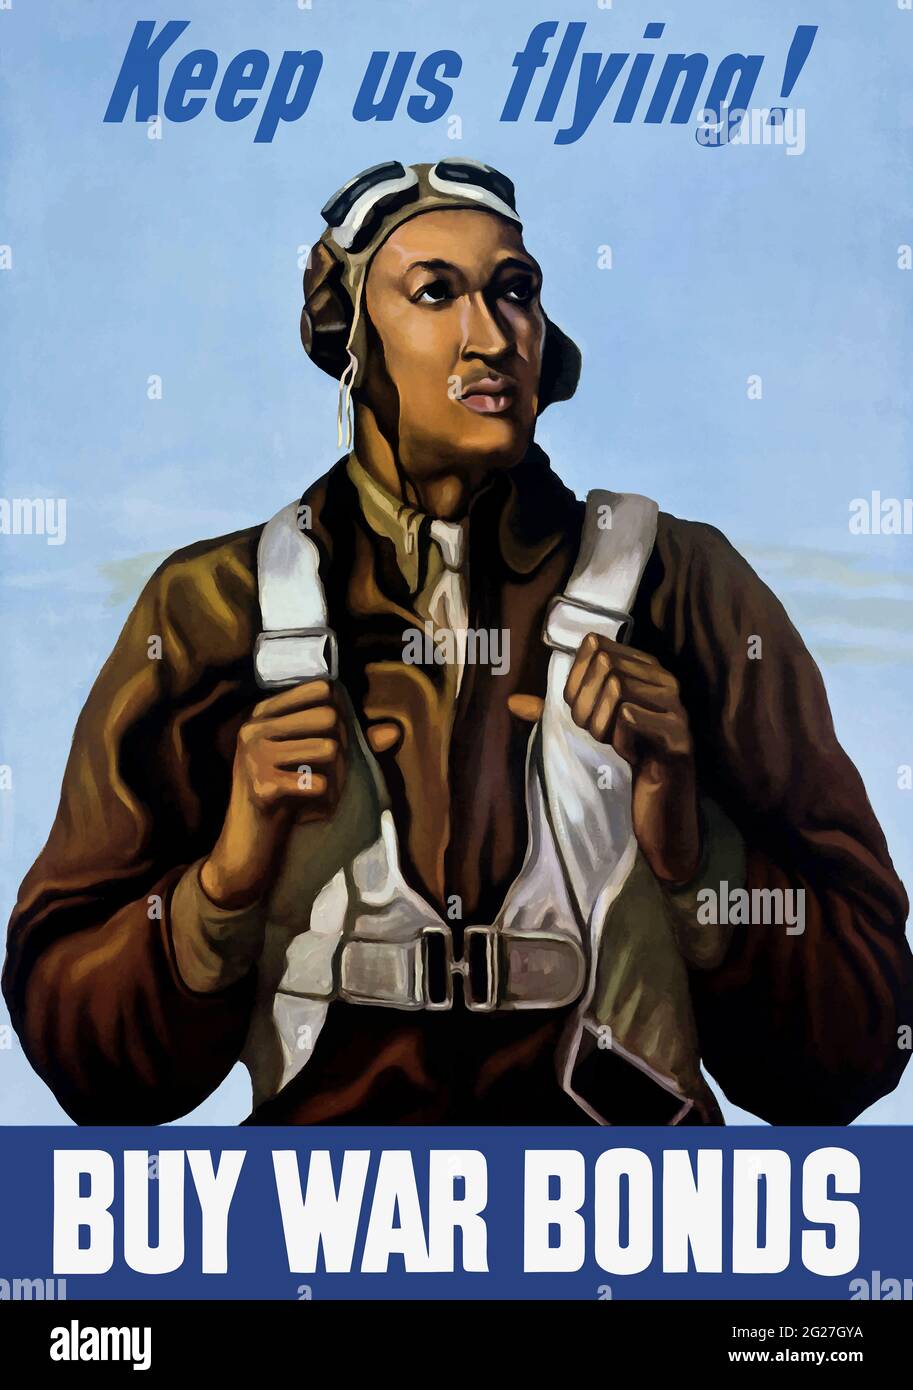 U.S. Military propaganda image of a Tuskegee airman. Stock Photo